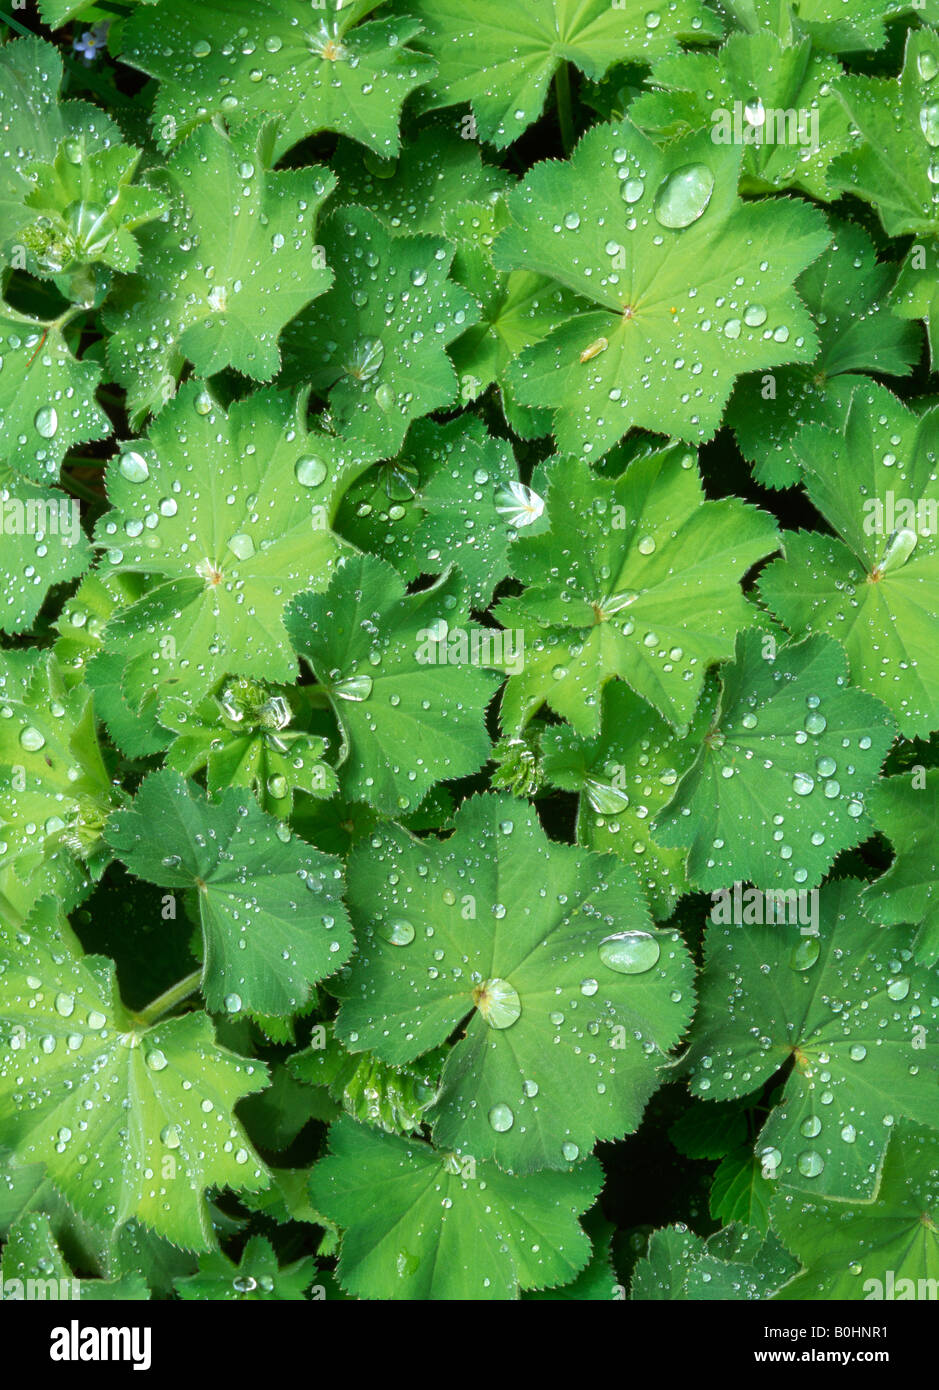 Tautropfen, Wassertropfen bedeckt eine belaubte grüne Gartenpflanze, Schwaz, Tirol, Austria, Europe Stockfoto